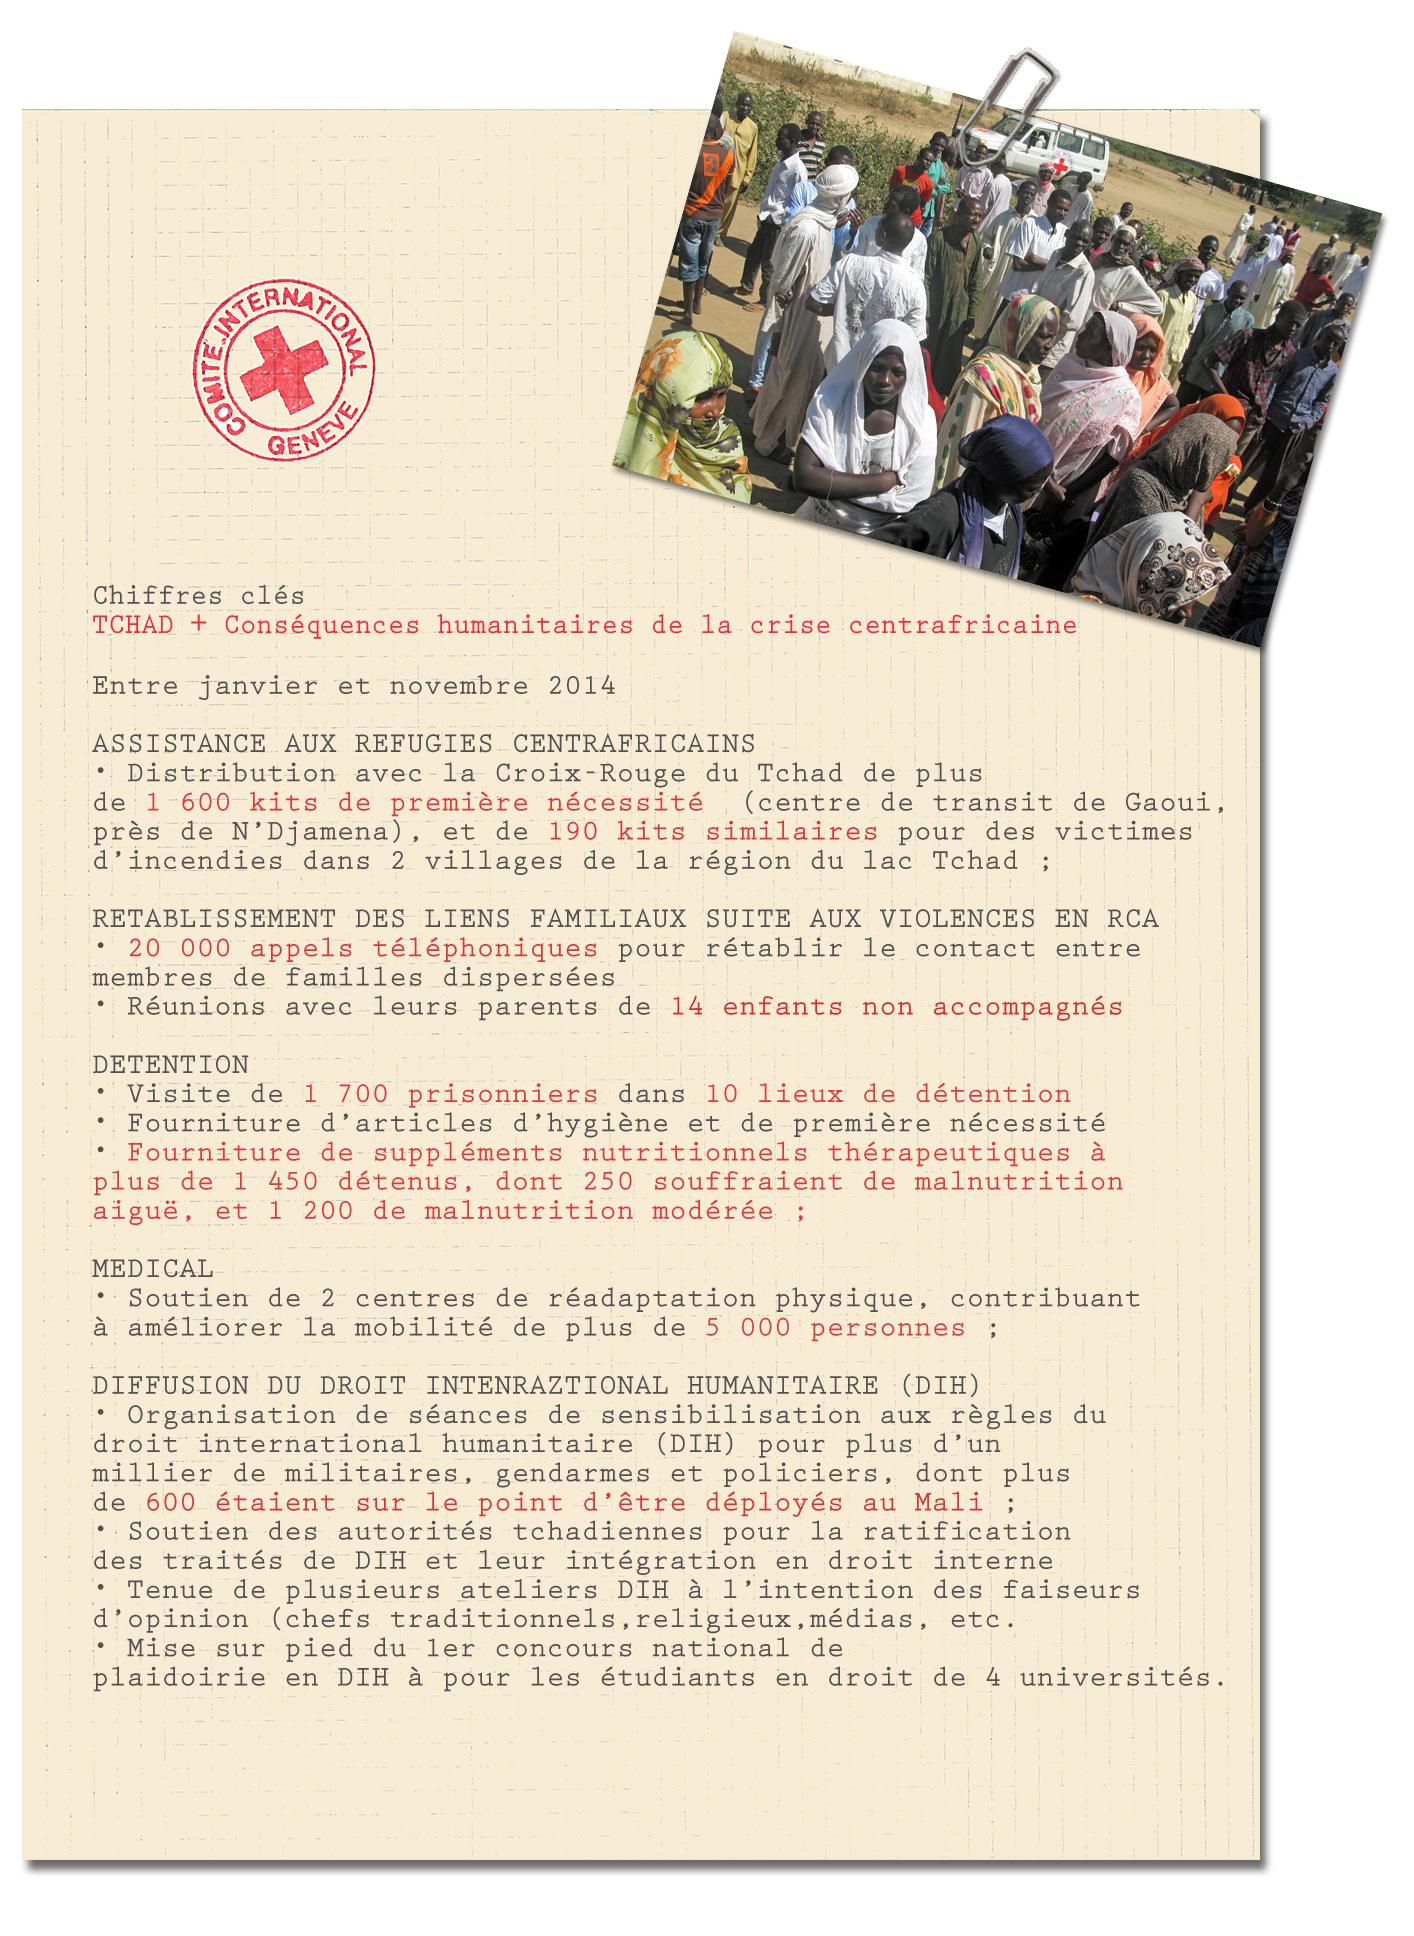 Chiffres clés conséquences humanitaires Tchad/RCA